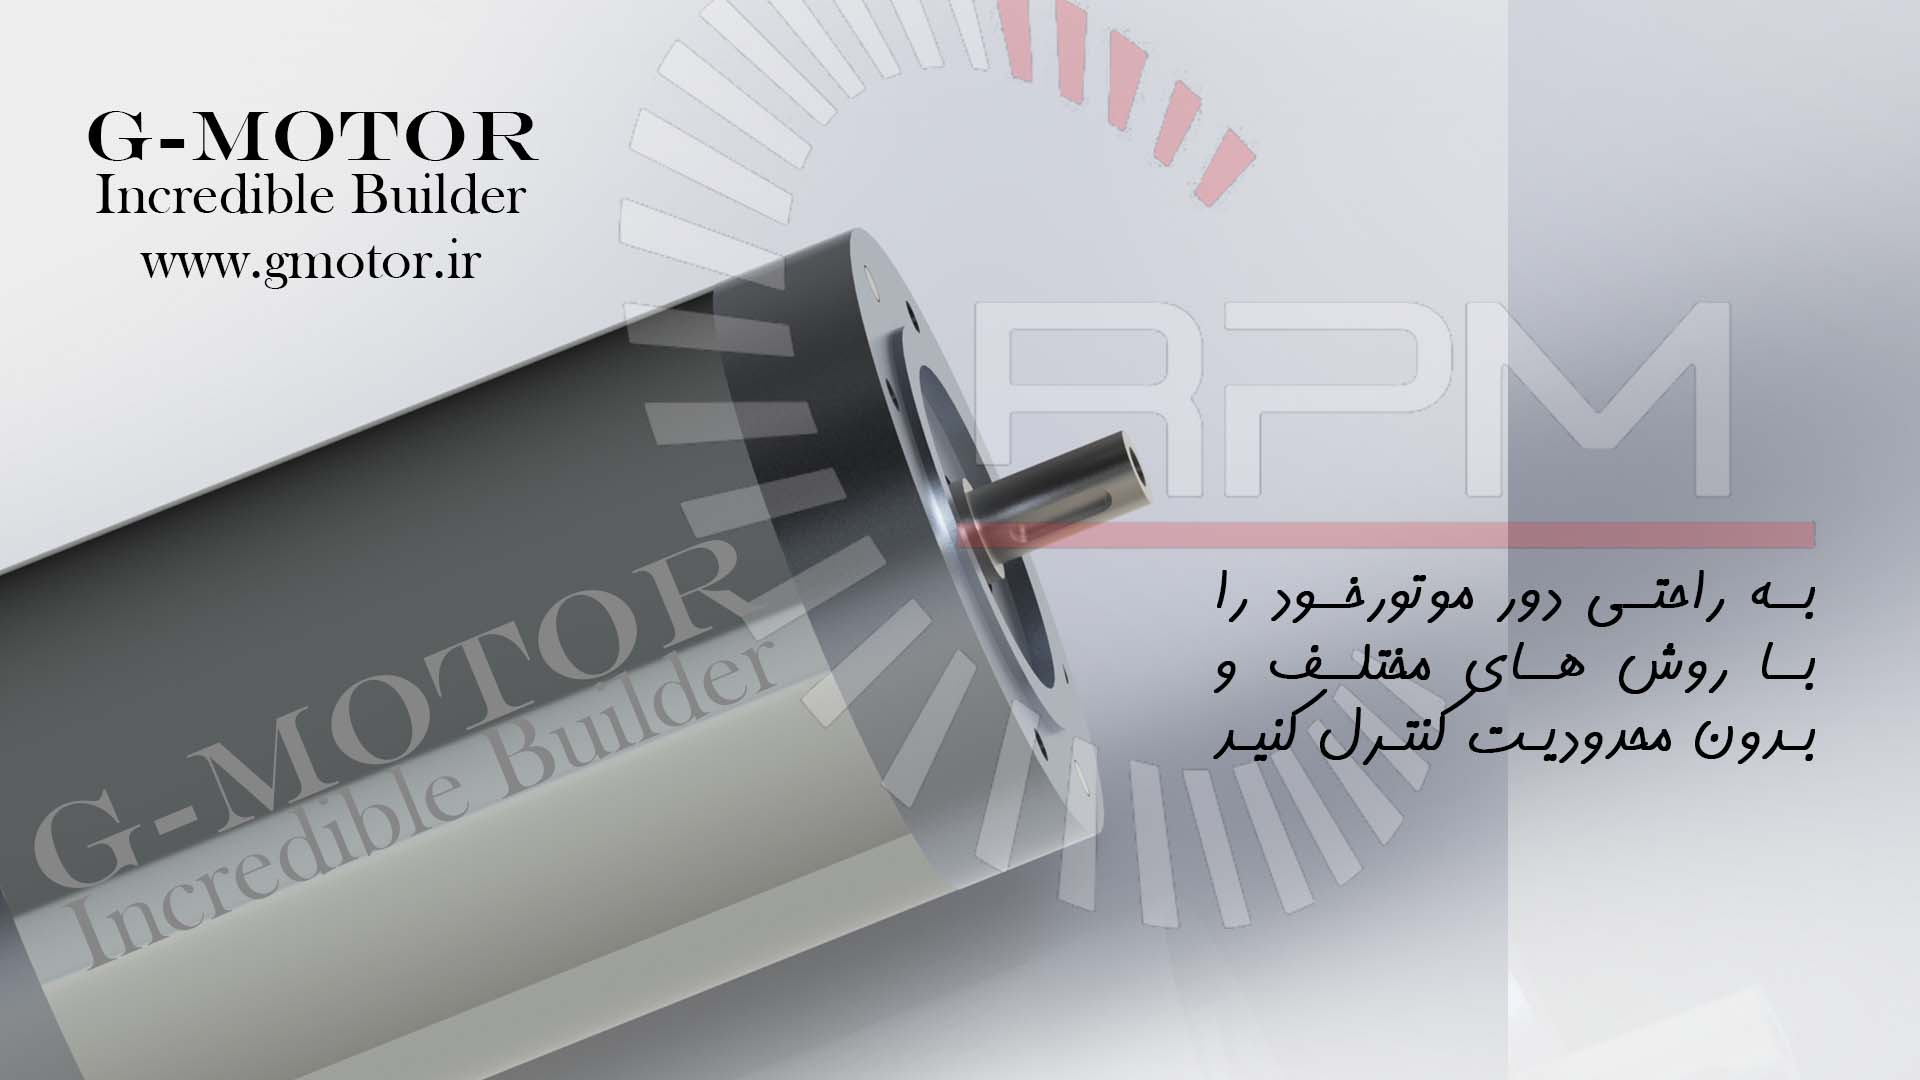 GMI90170 موتور دی سی براشلس (BLDC) اینرانر صنعتی با قابلیت کنترل دور و ... ساخته شده توسط گروه پژوهشی و صنعتی جی موتور (G-MOTOR) در ایران. برای مشاهده تصاویر لطفا یکبار صفحه را بروزرسانی نمایید.